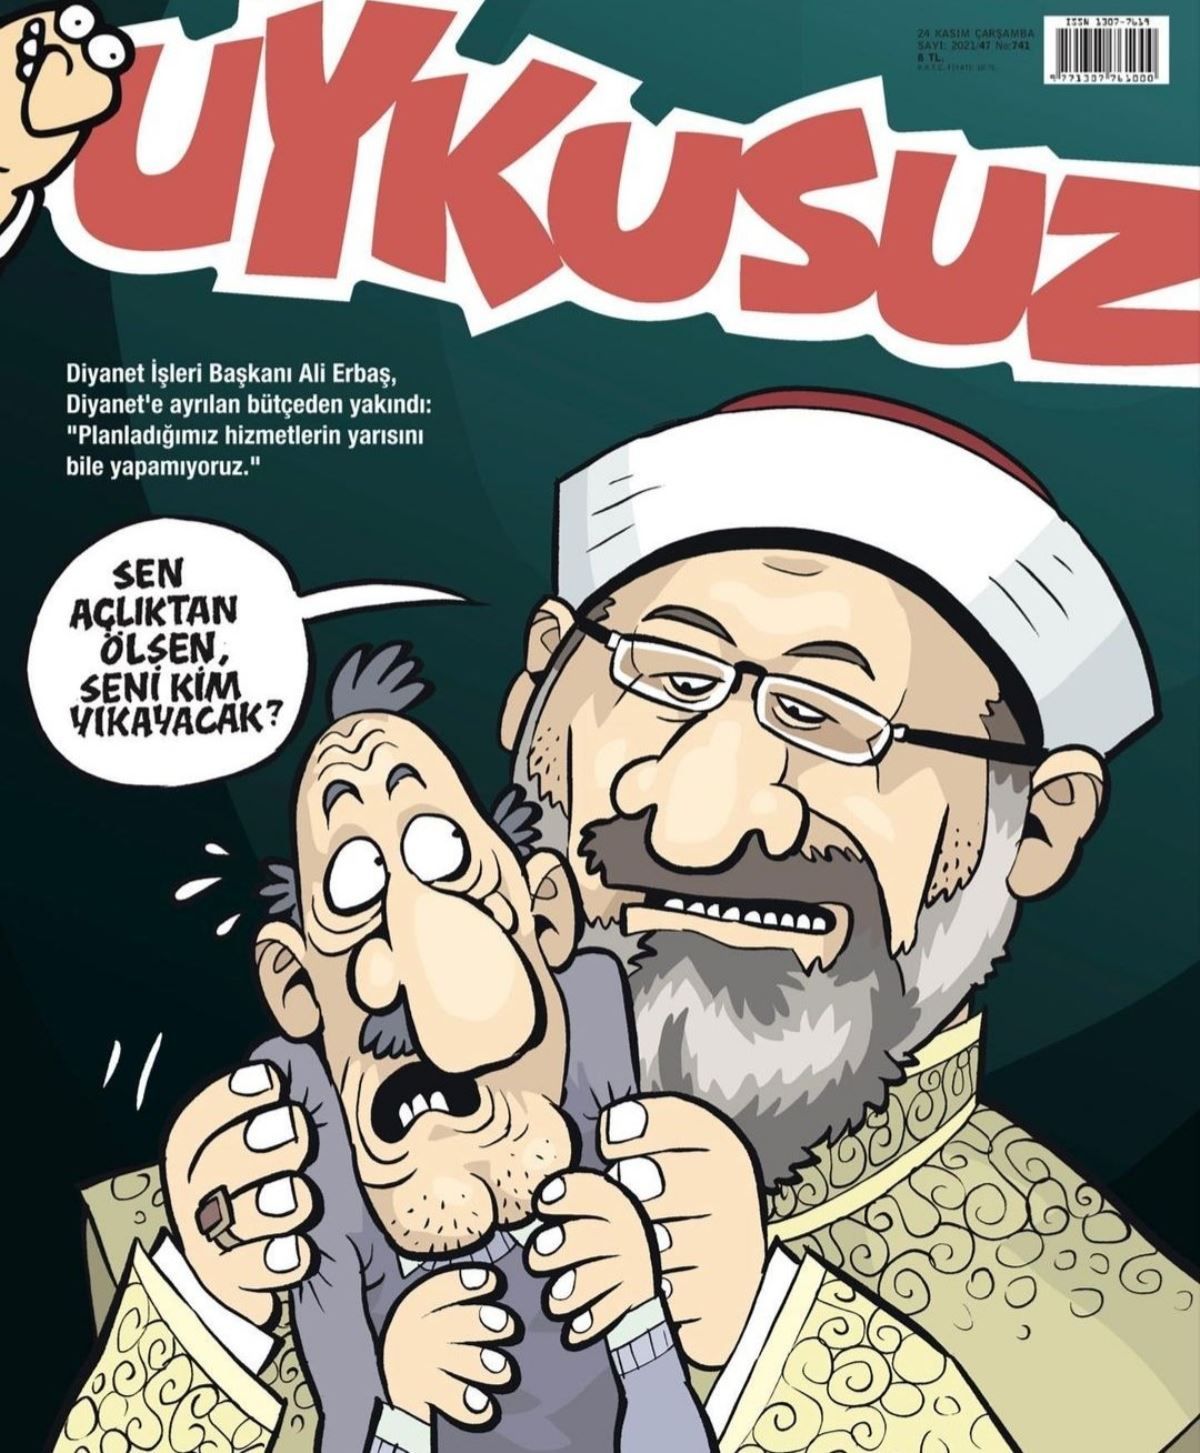 Uykusuz'dan 'Ali Erbaş' kapağı